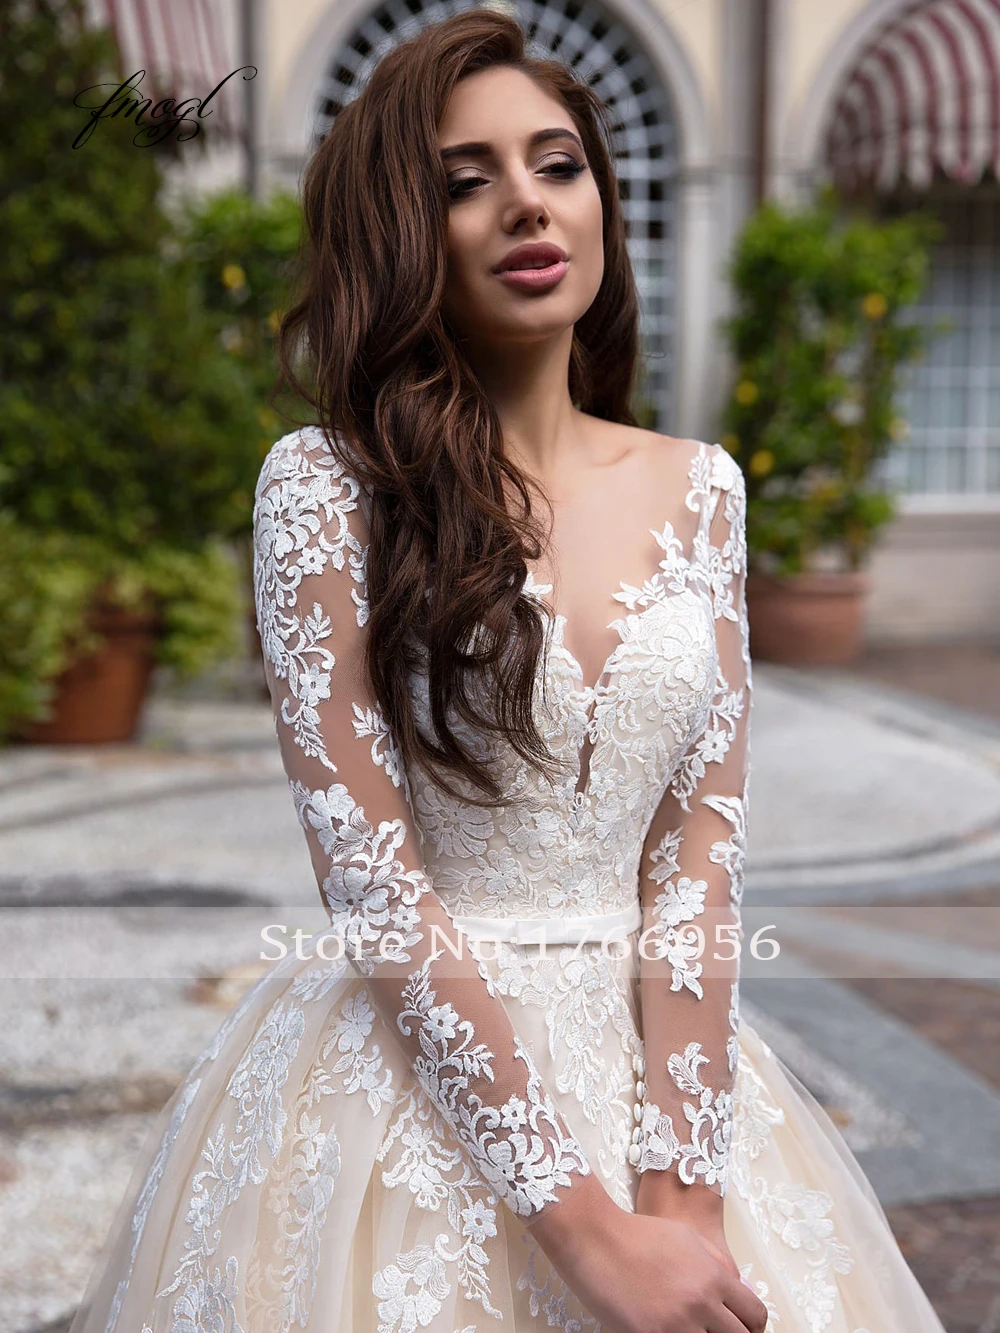 Fmogl элегантные иллюзионные винтажные Свадебные платья с длинным рукавом Роскошные свадебные платья трапециевидной формы с круглым вырезом и аппликацией